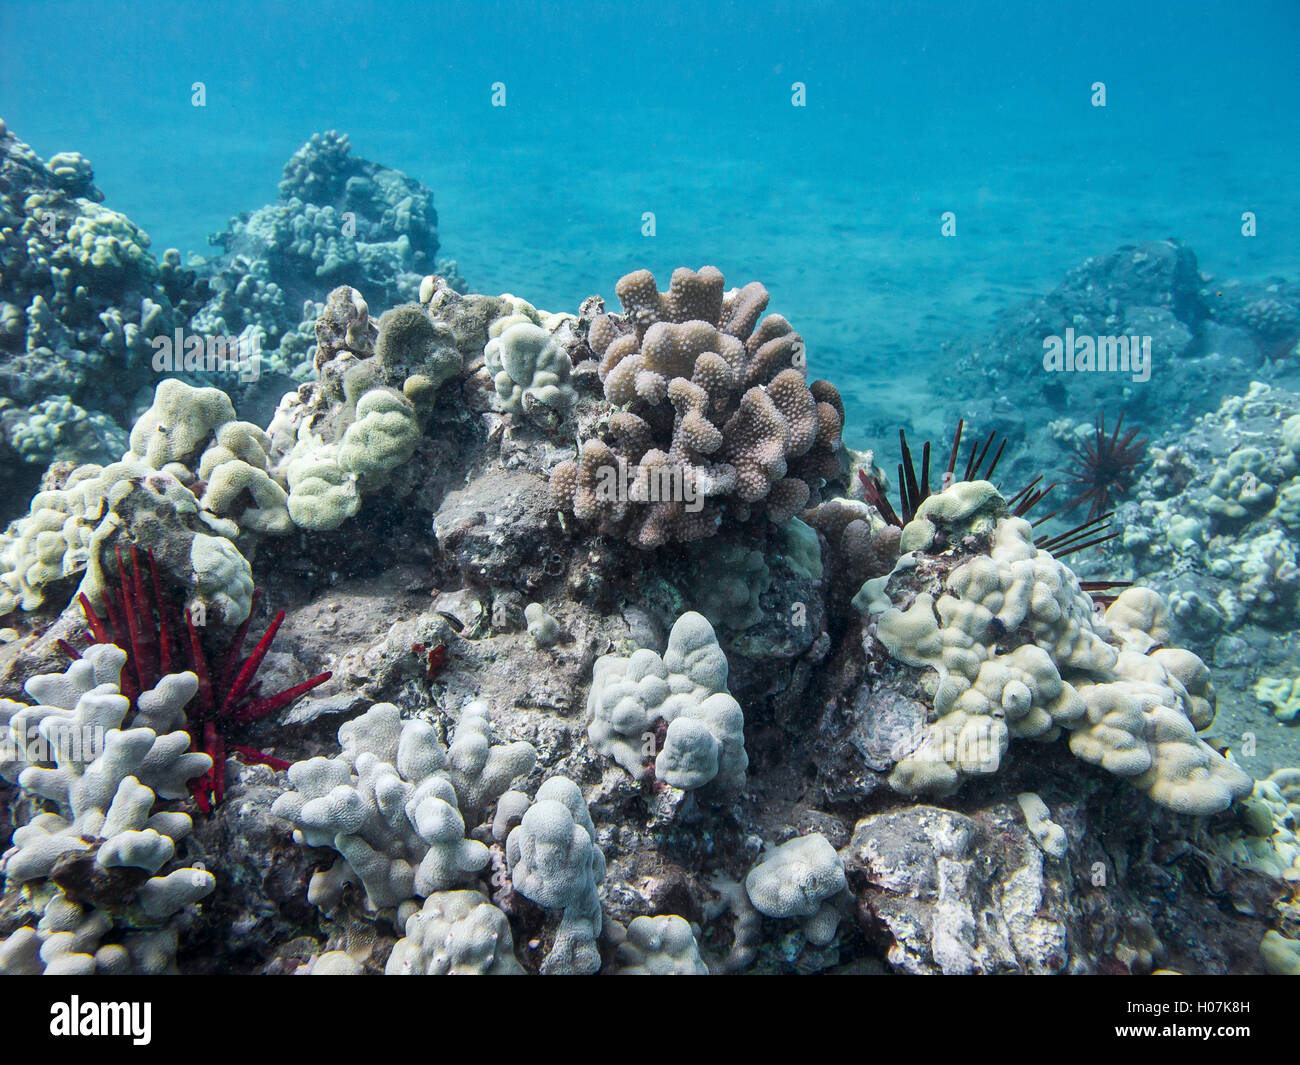 Red pencil sea urchin colony Stock Photo